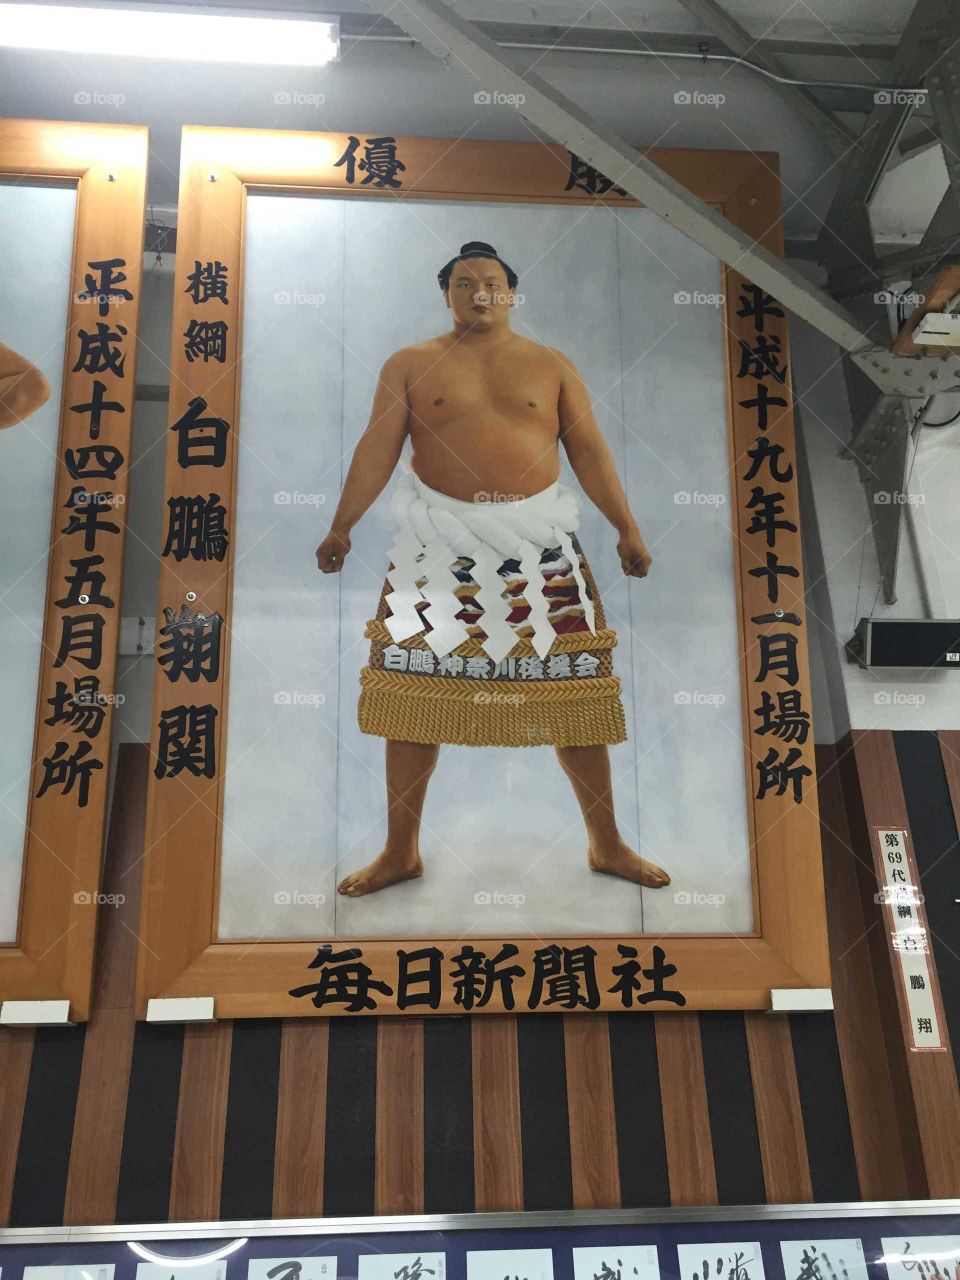 A sumo guy